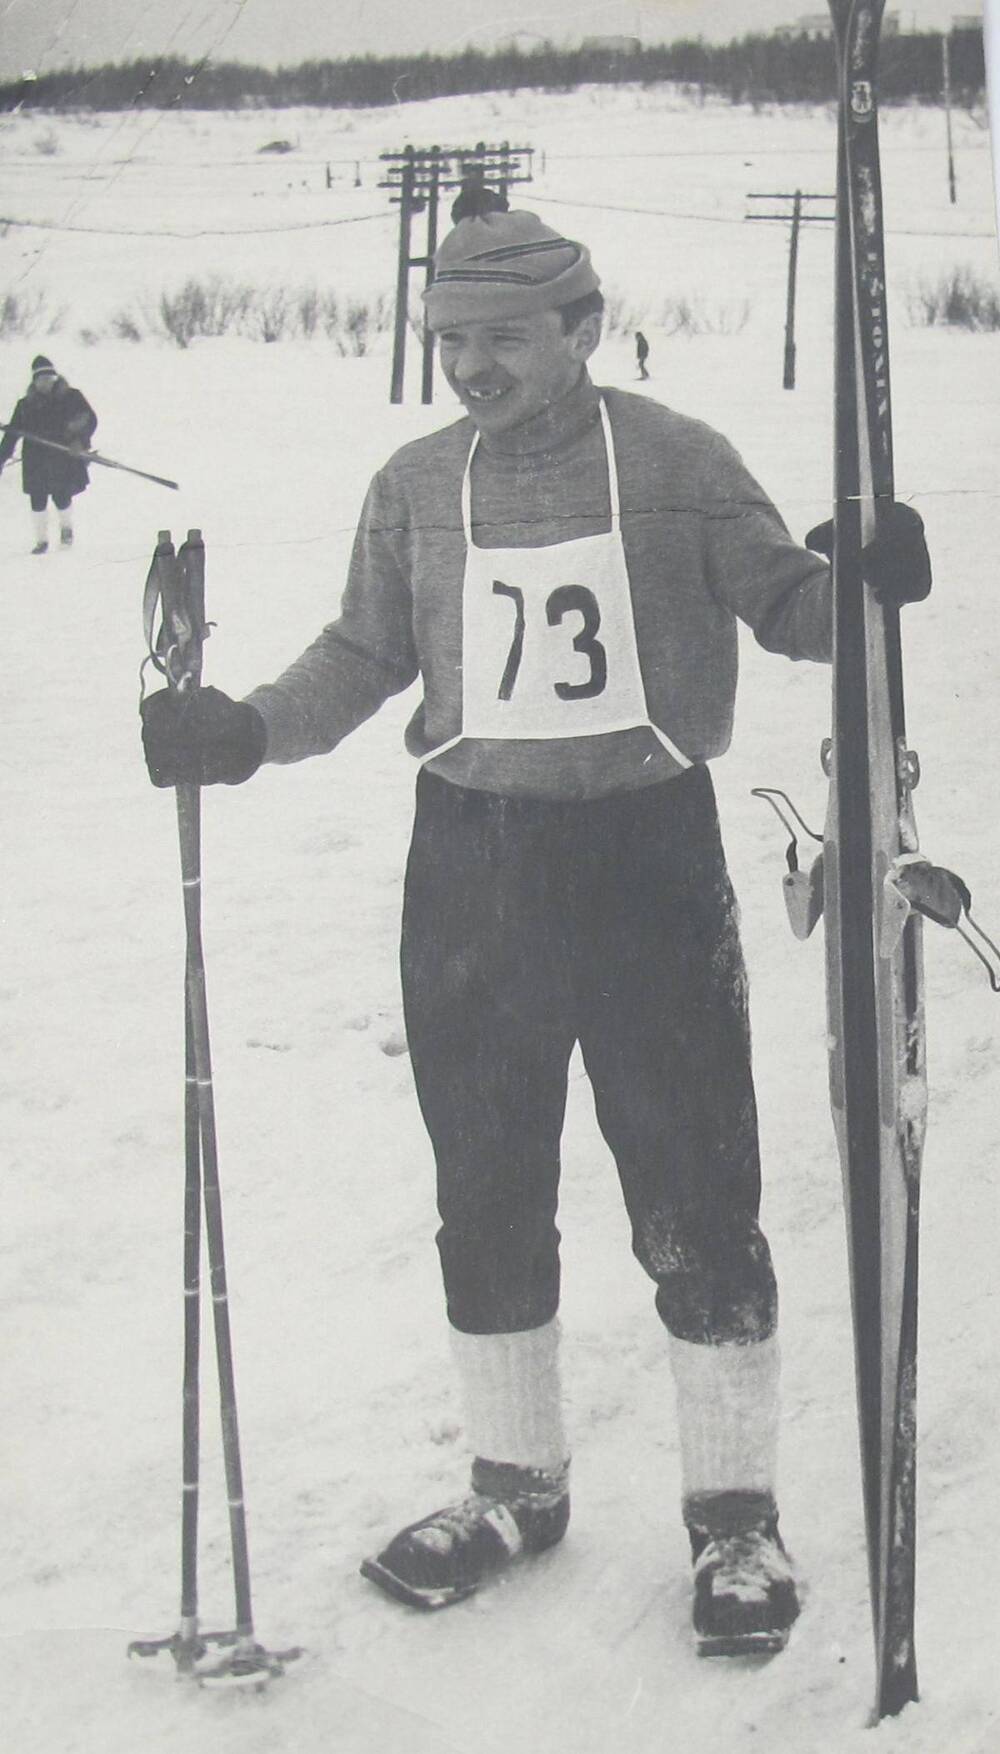 Фотография. Денскевич Александр Никонорович, призер в соревнованиях по лыжным гонкам.